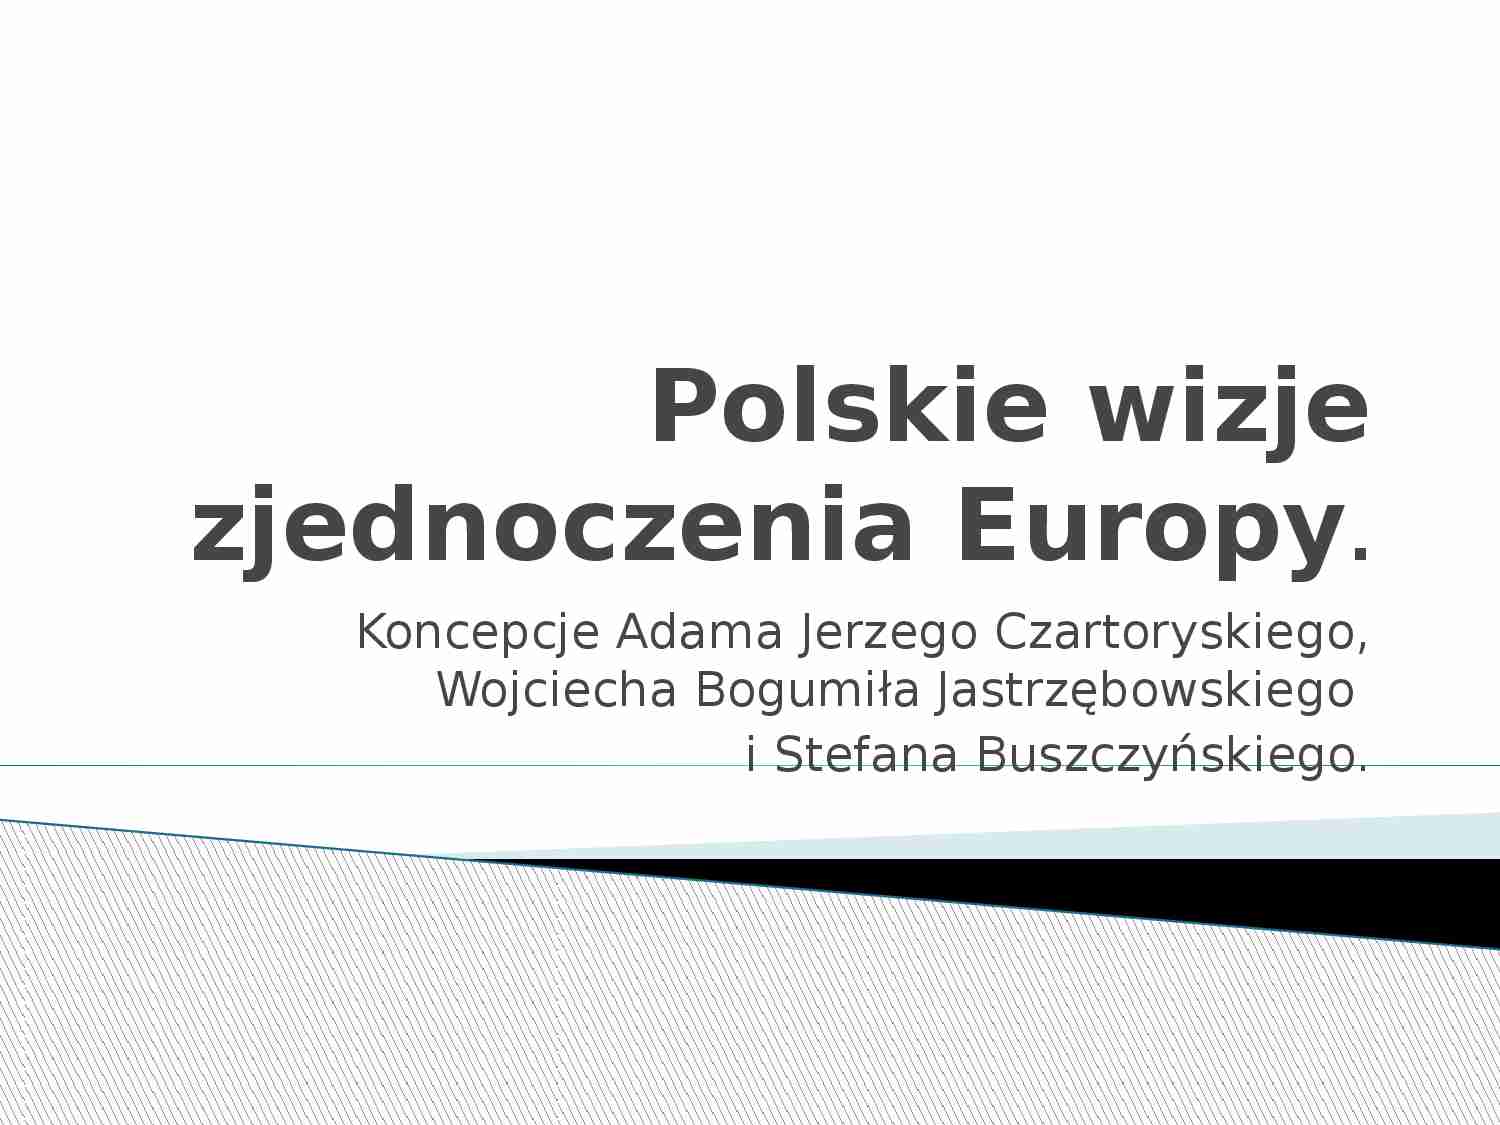 Polskie wizje zjednoczenia Europy-prezenyacja - strona 1